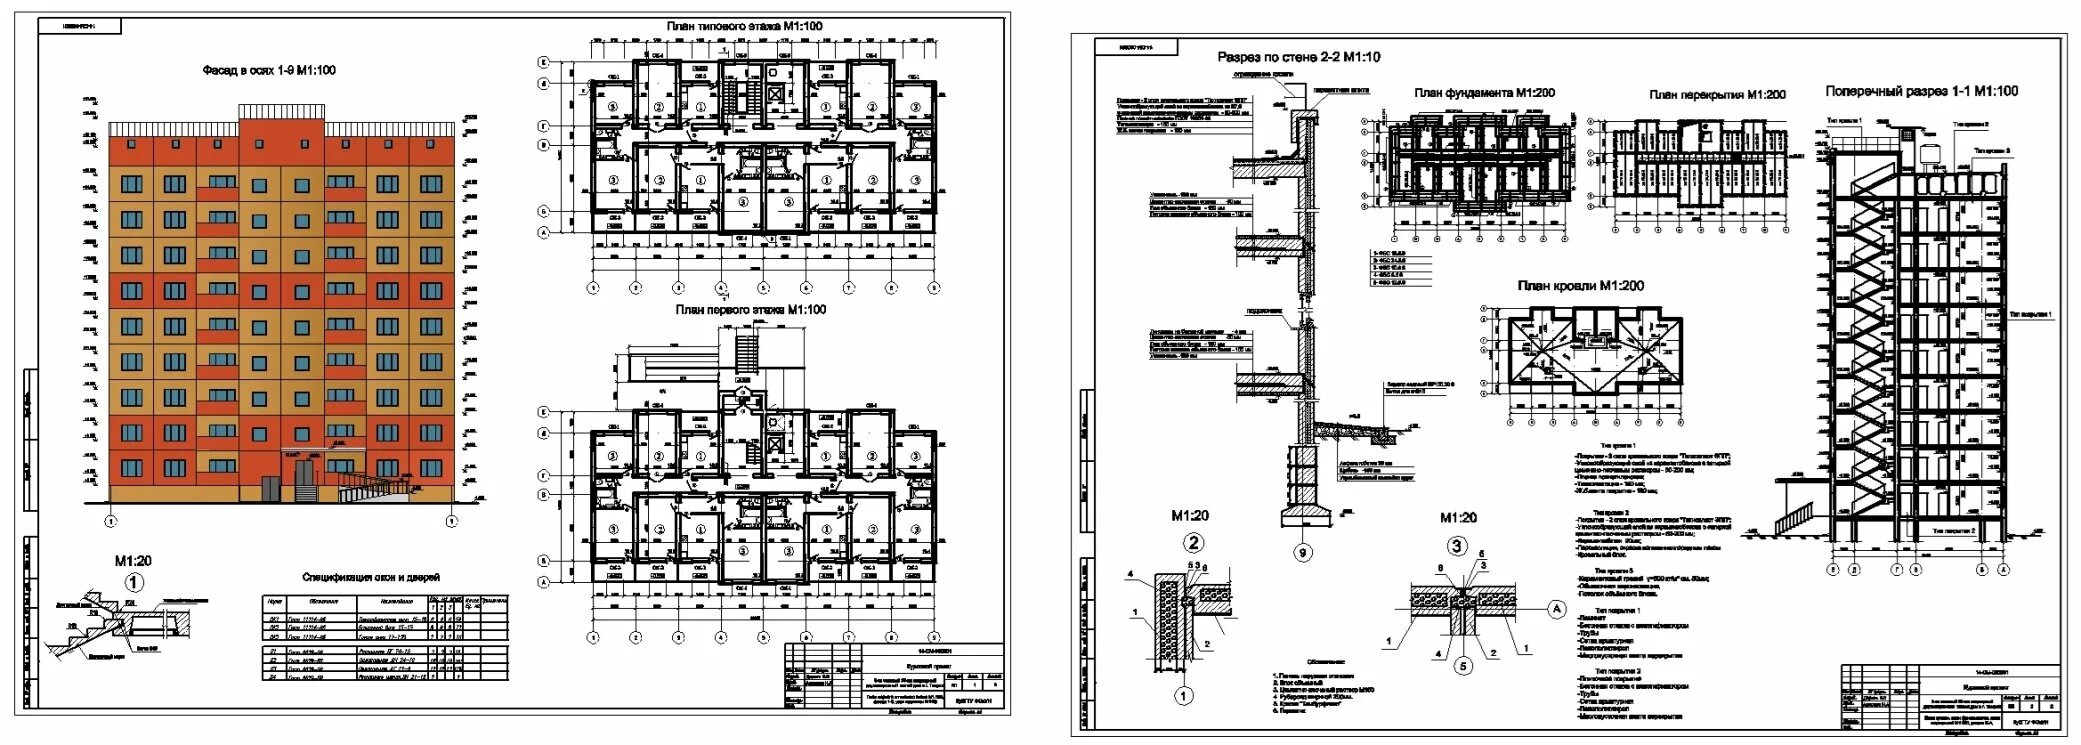 Пример панельного дома. Дипломный чертеж 3-х этажного административного здания. Фасад 10 этажного дома чертеж. Двухсекционный 9 этажный дом план этажа. План панельного многоэтажного дома.